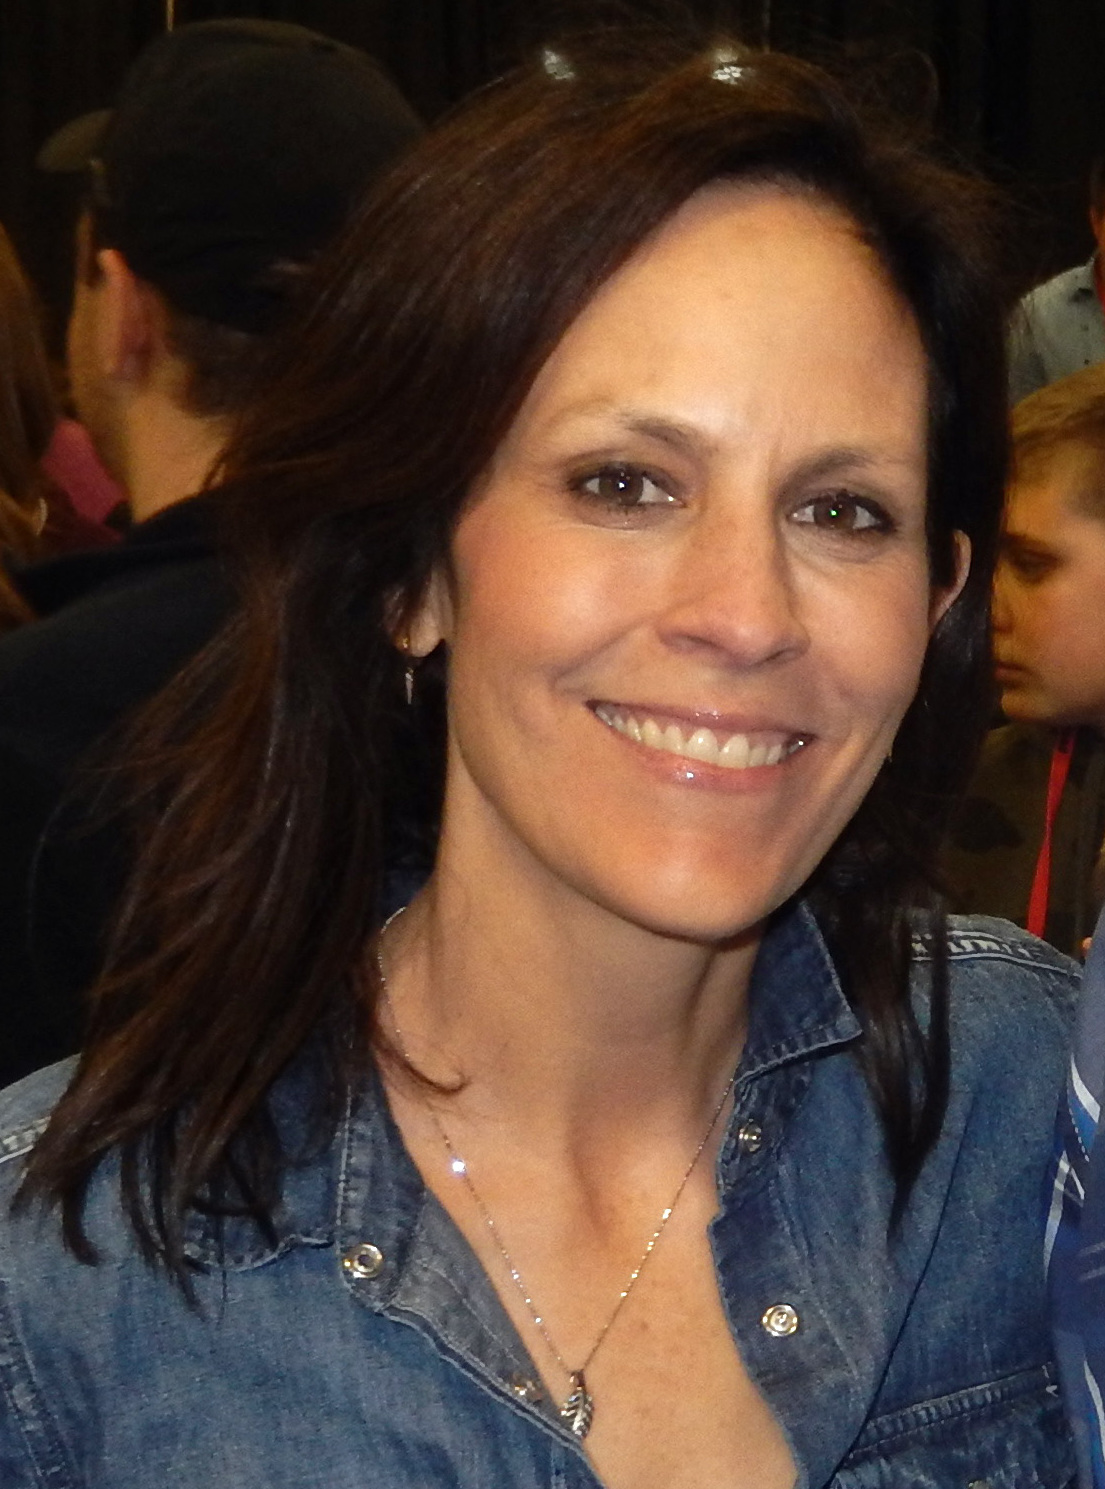 Alicia Silverstone - Wikipedia